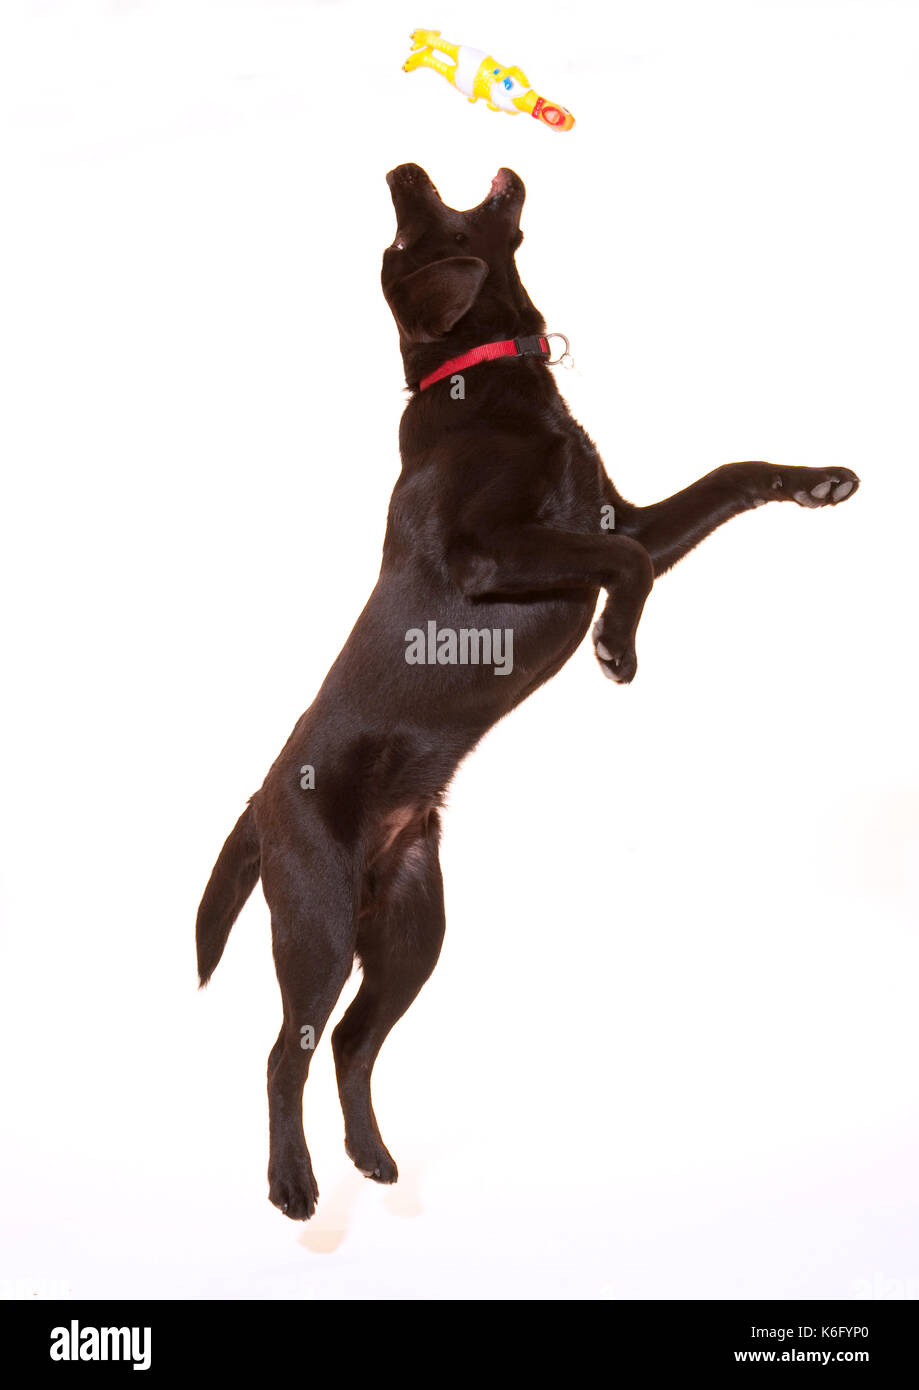 6 mese fa labrador cane, in studio, UK, cioccolato di colore marrone, il salto la cattura del giocattolo, riproduzione Foto Stock